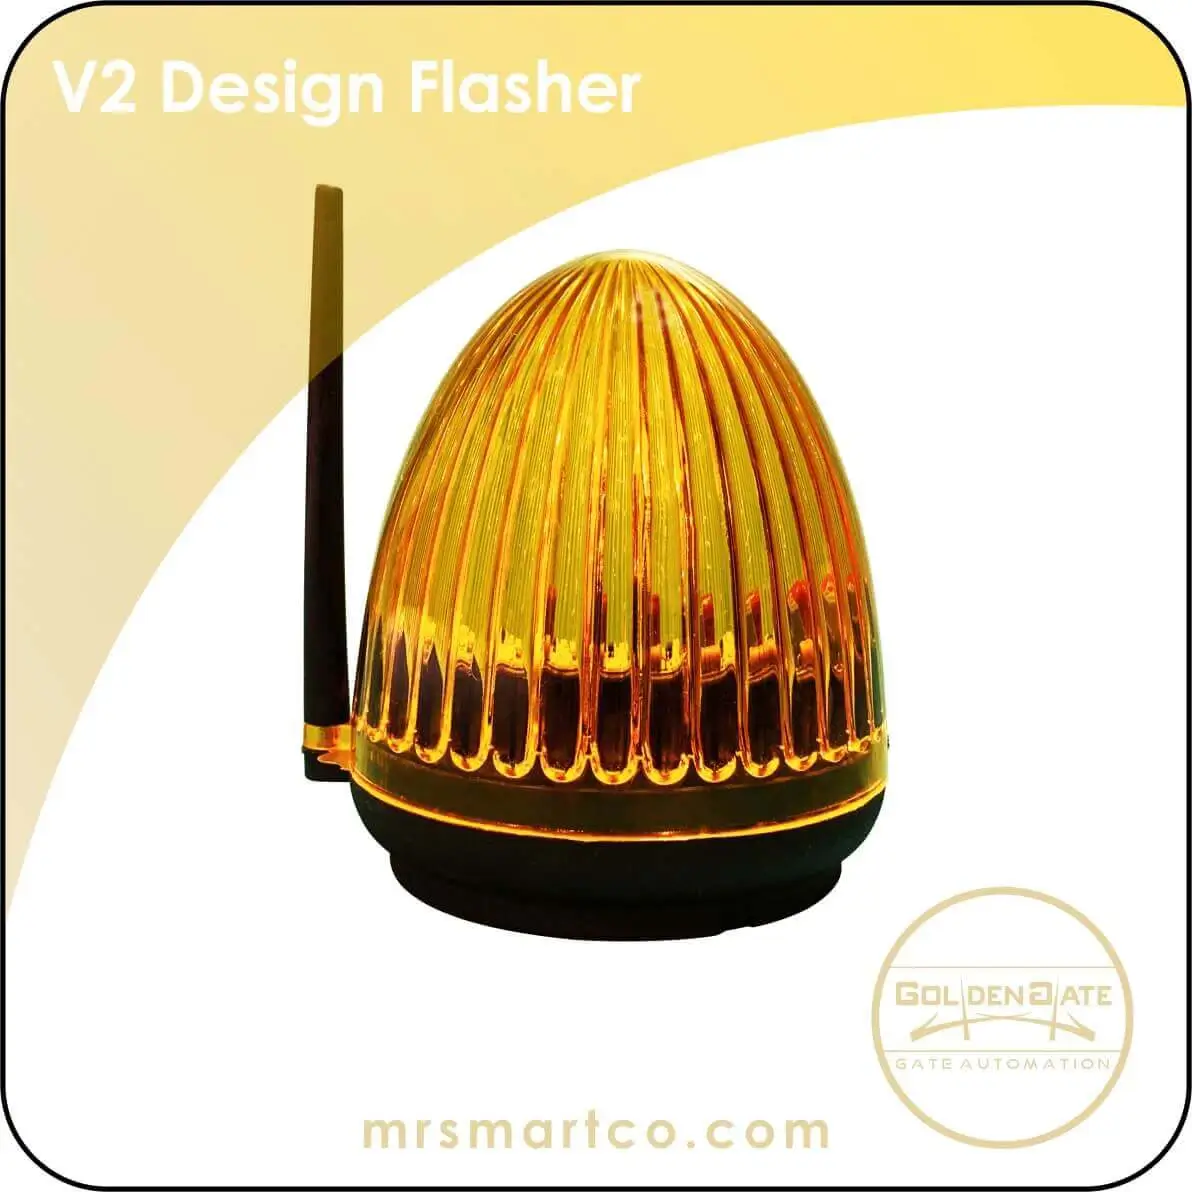 V2 Design Flasher